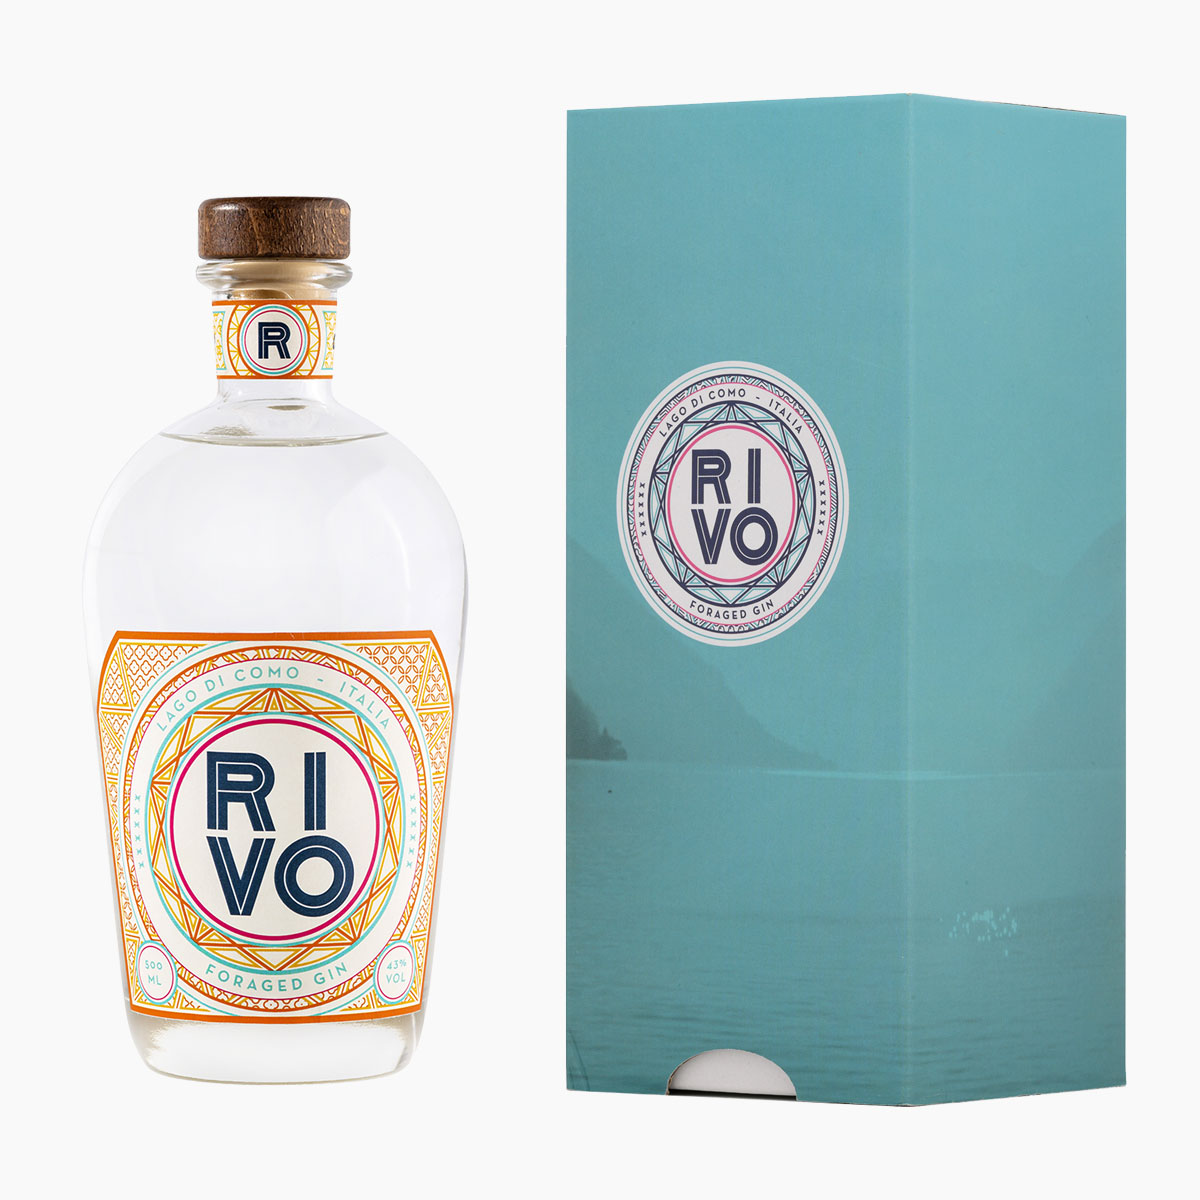 Brug RIVO Mediterranean Gin + Gaveæske til en forbedret oplevelse